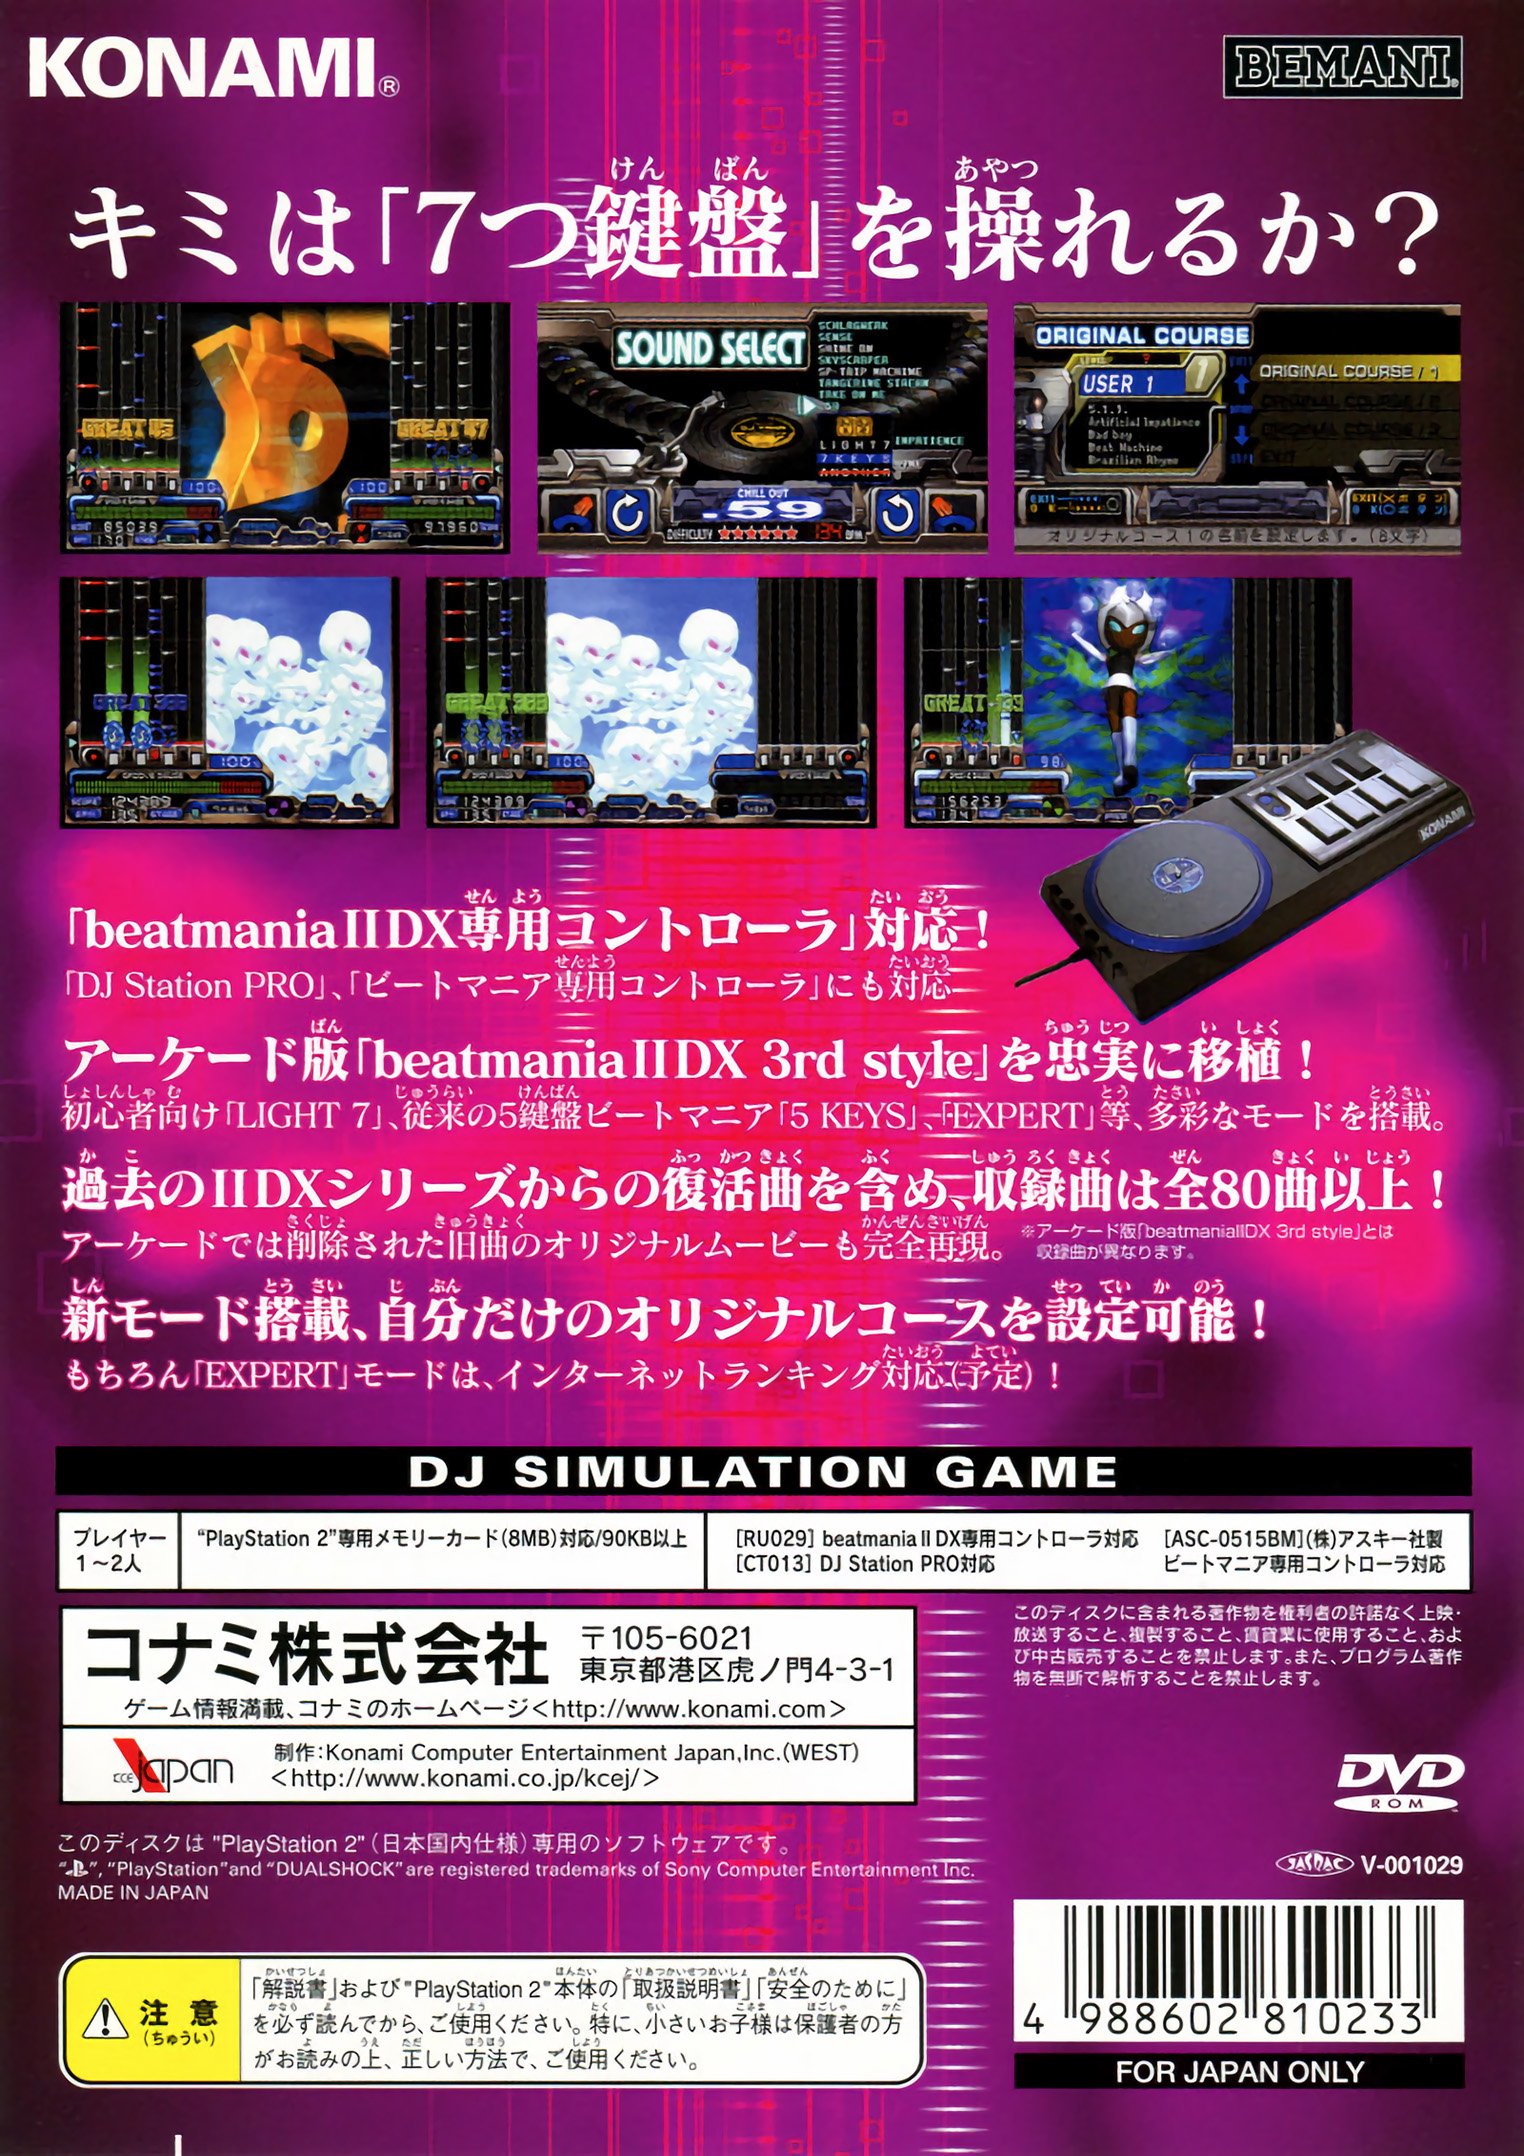 TGDB - Browse - Game - beatmania IIDX 3rd style